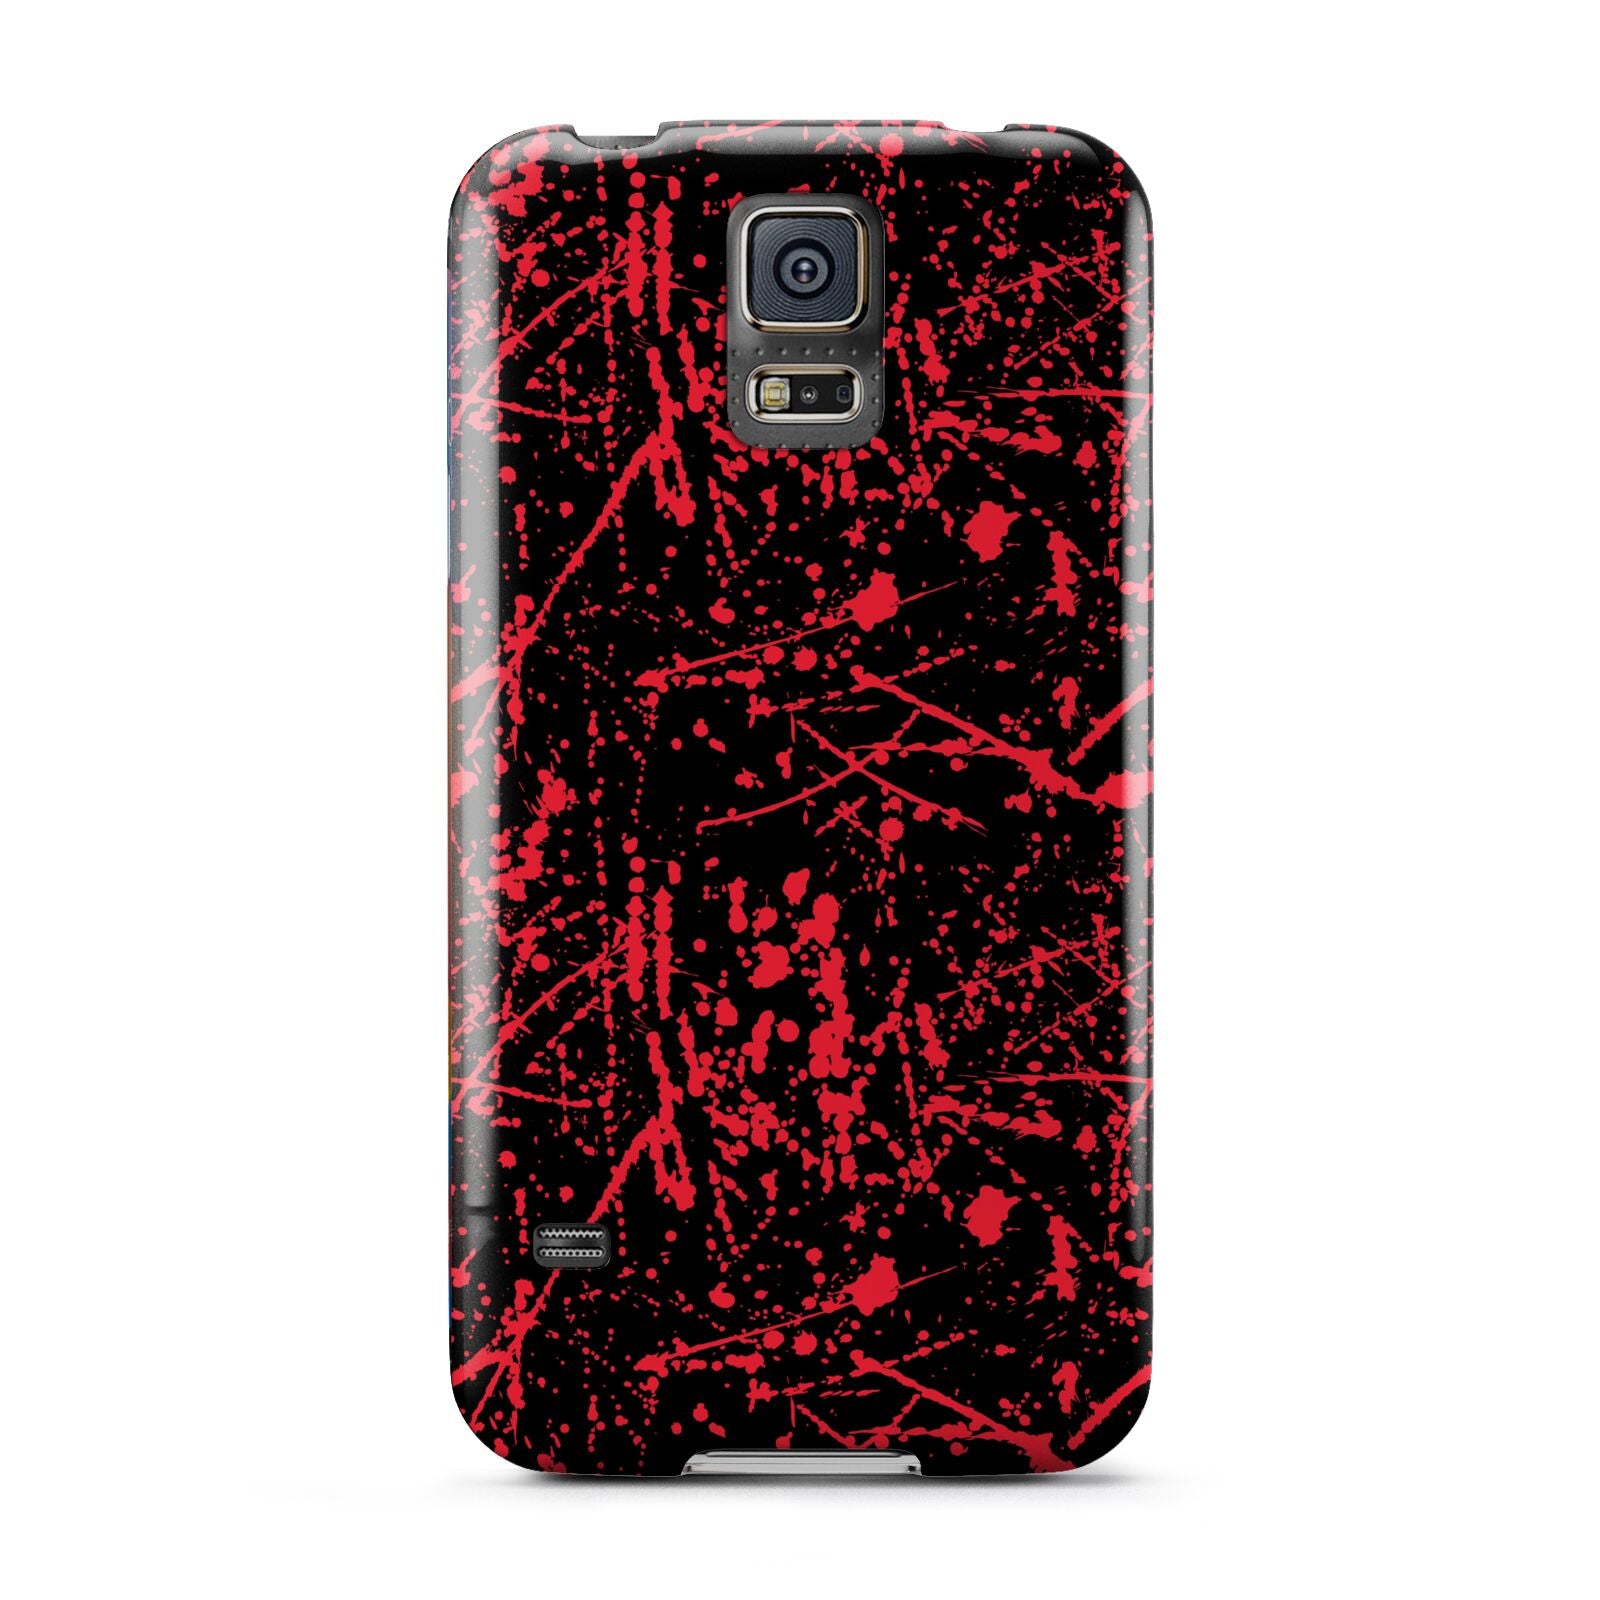 Blood Splatters Samsung Galaxy S5 Case